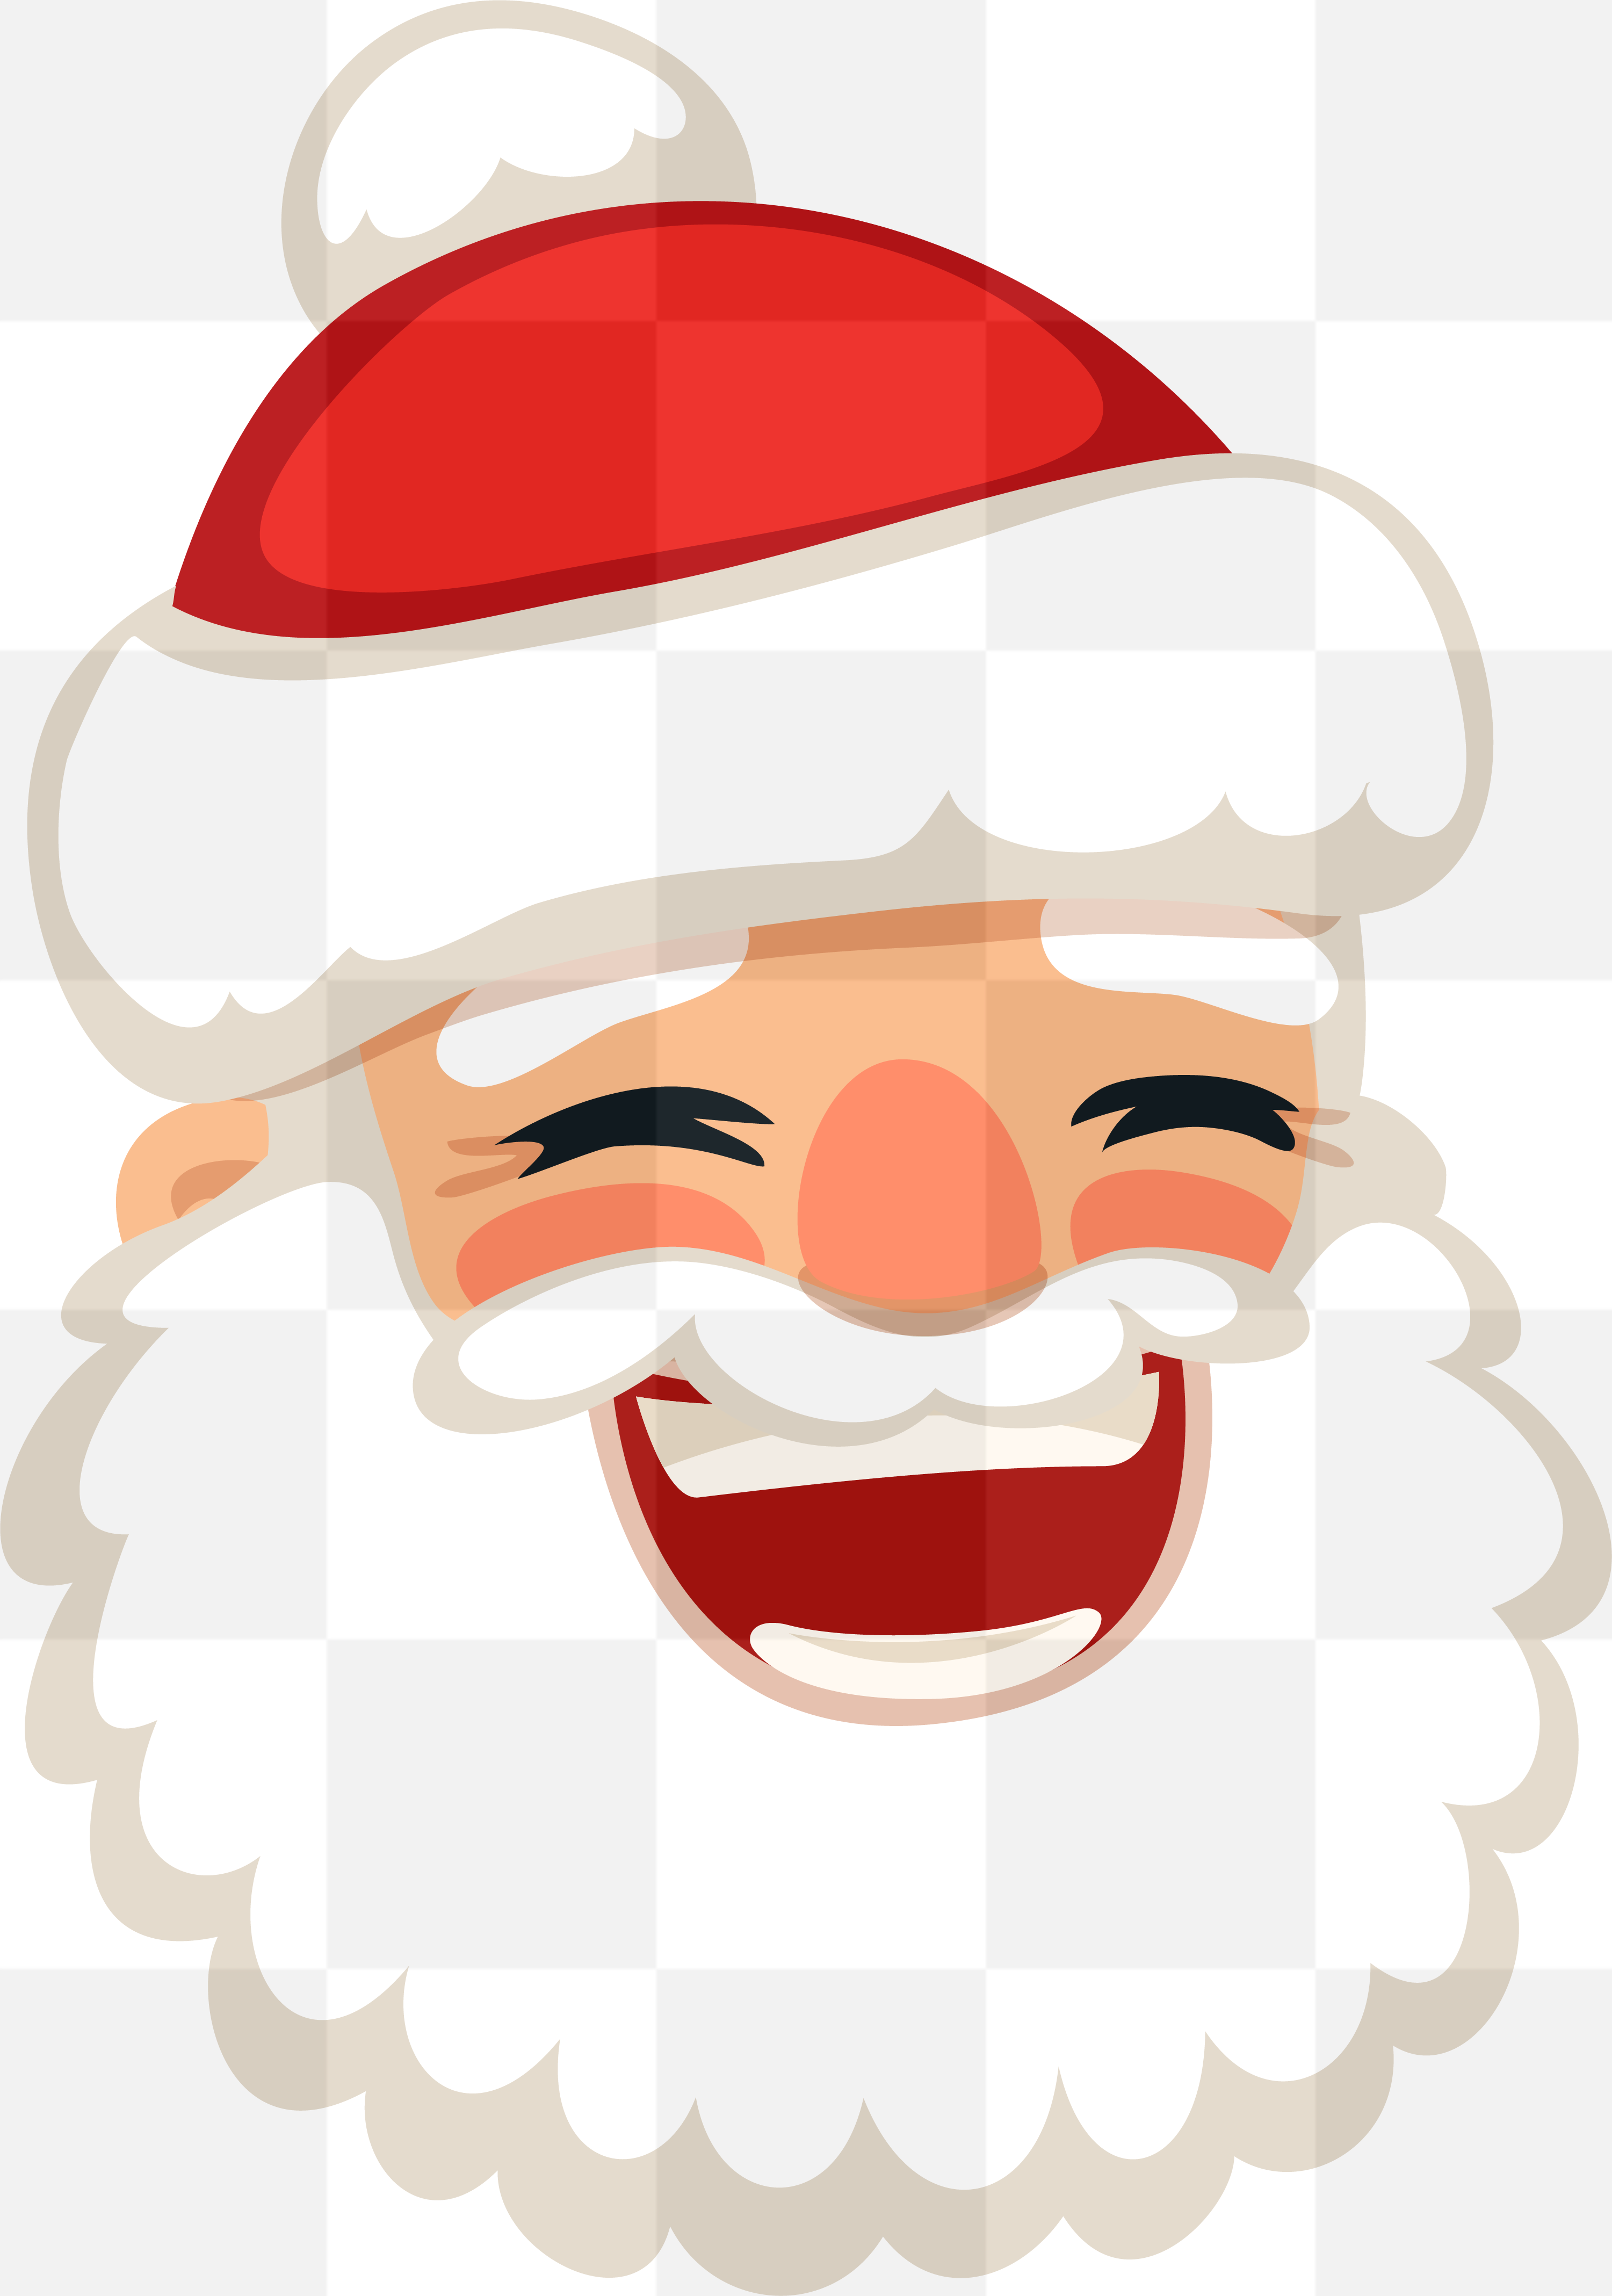 3001 x 4274 px | Santa Face PNG. Santa claus mask png. Santa Claus Face...